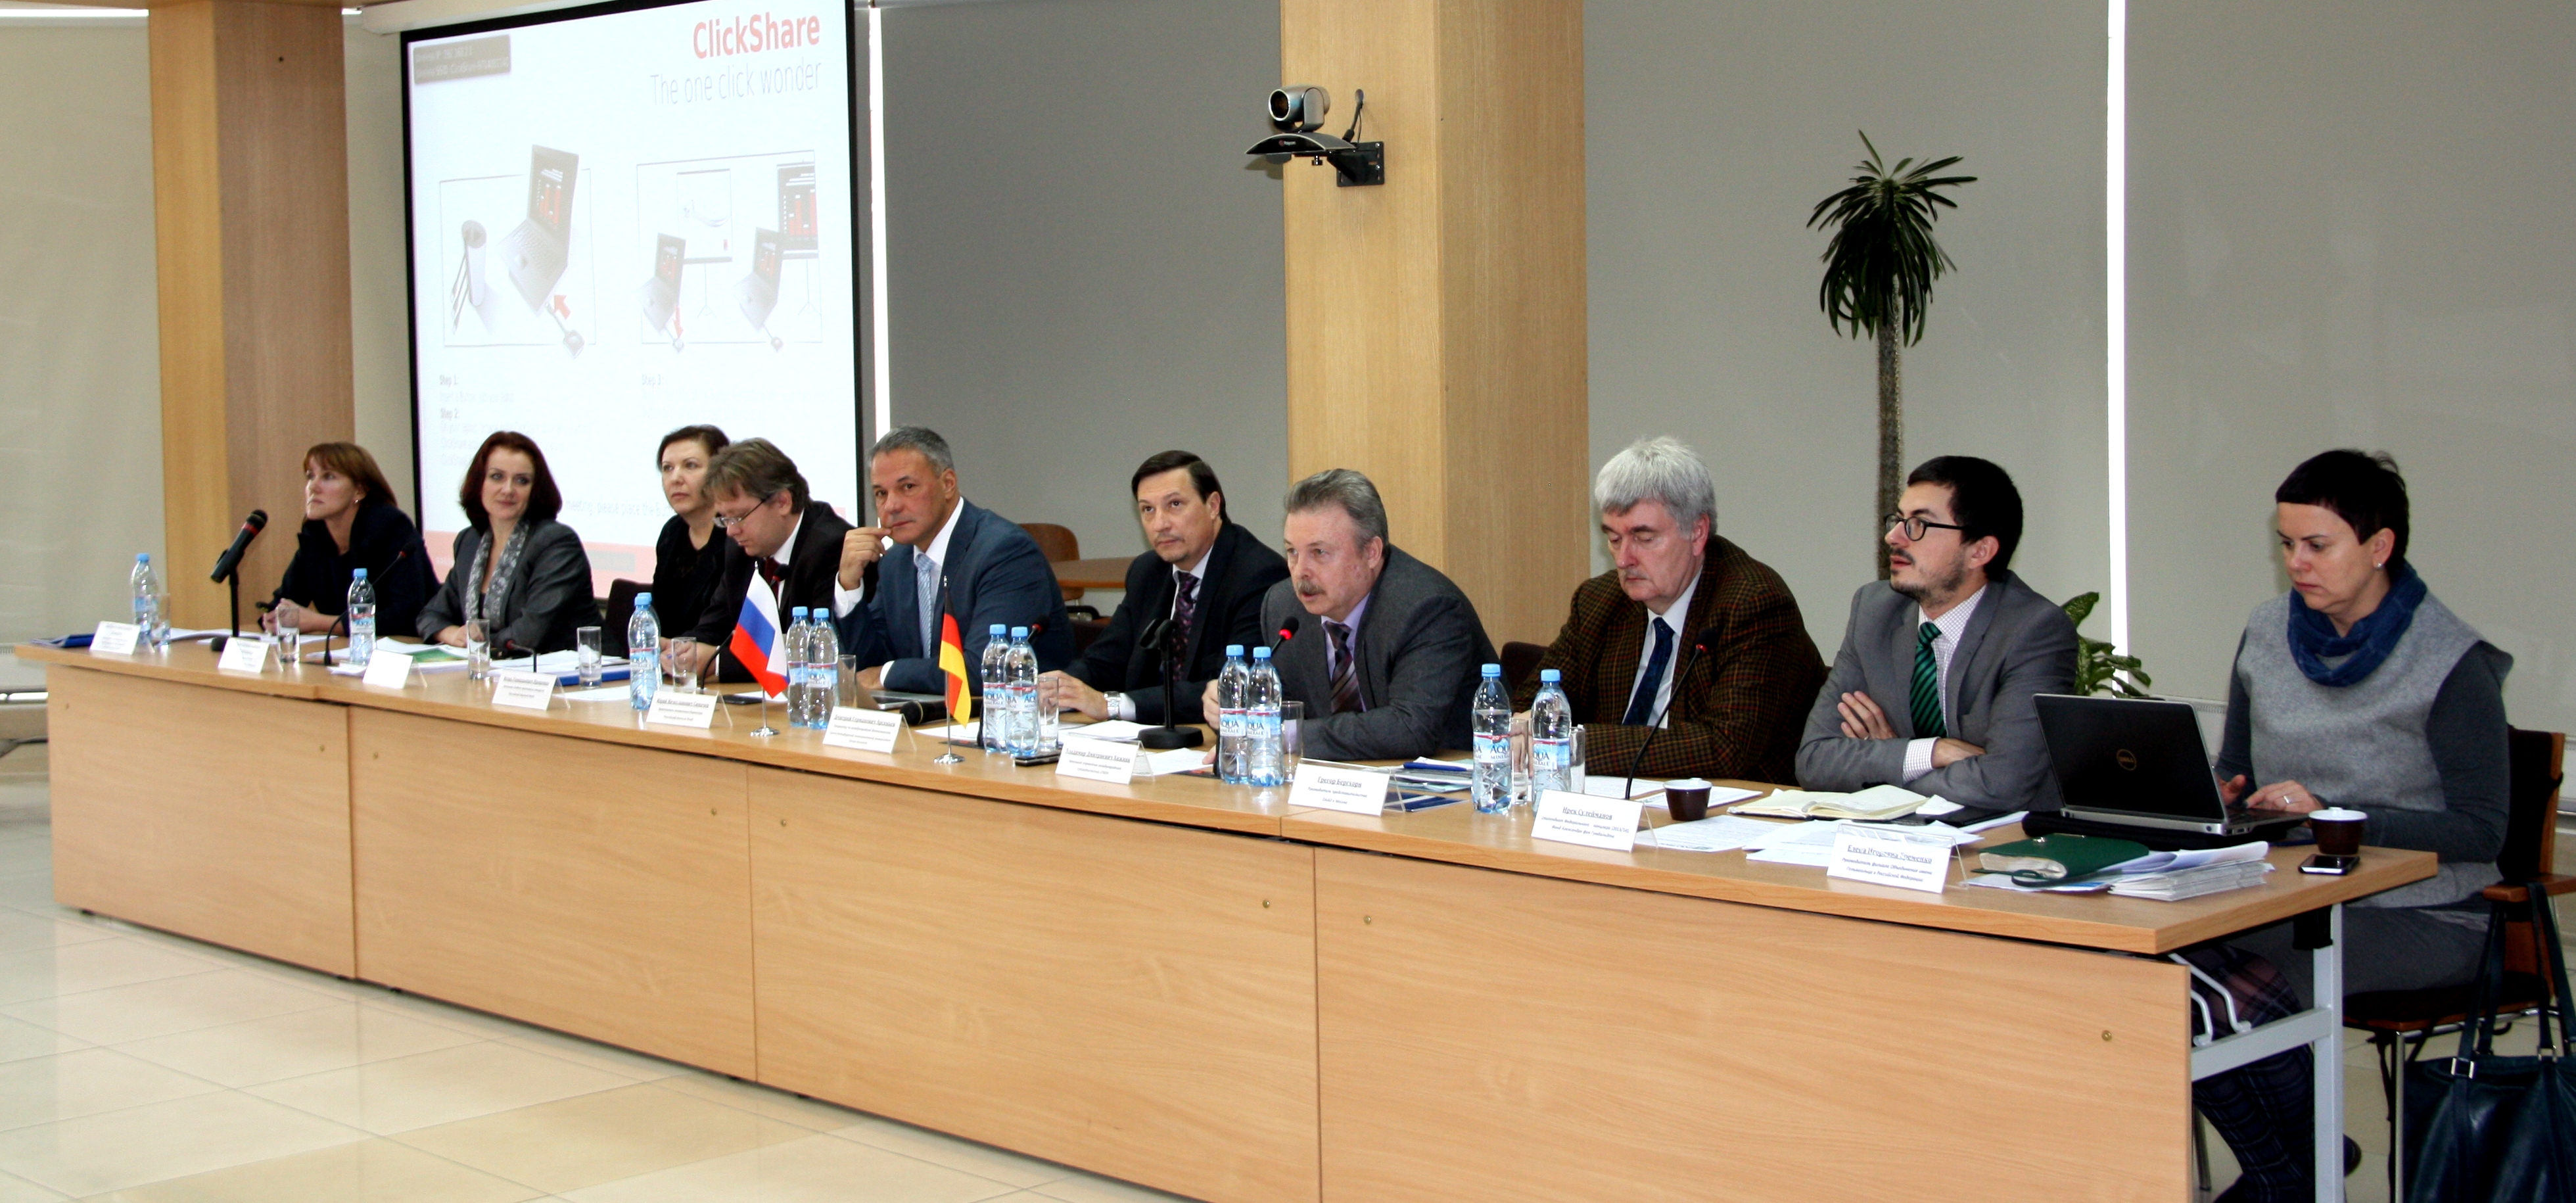 Opening of the seminar at the Polytechnic University (left to right): S. Shevereva (RFBR), N. Dobrovolskaya, G. Melnikova (DFG), I. Protsenko, Y. Simachev (RSF), D. Arseniev, V. Khizhnyak (SPbPU), G. Berghorn (DAAD), I. Suleimanov (AvH fellow), Y. Er